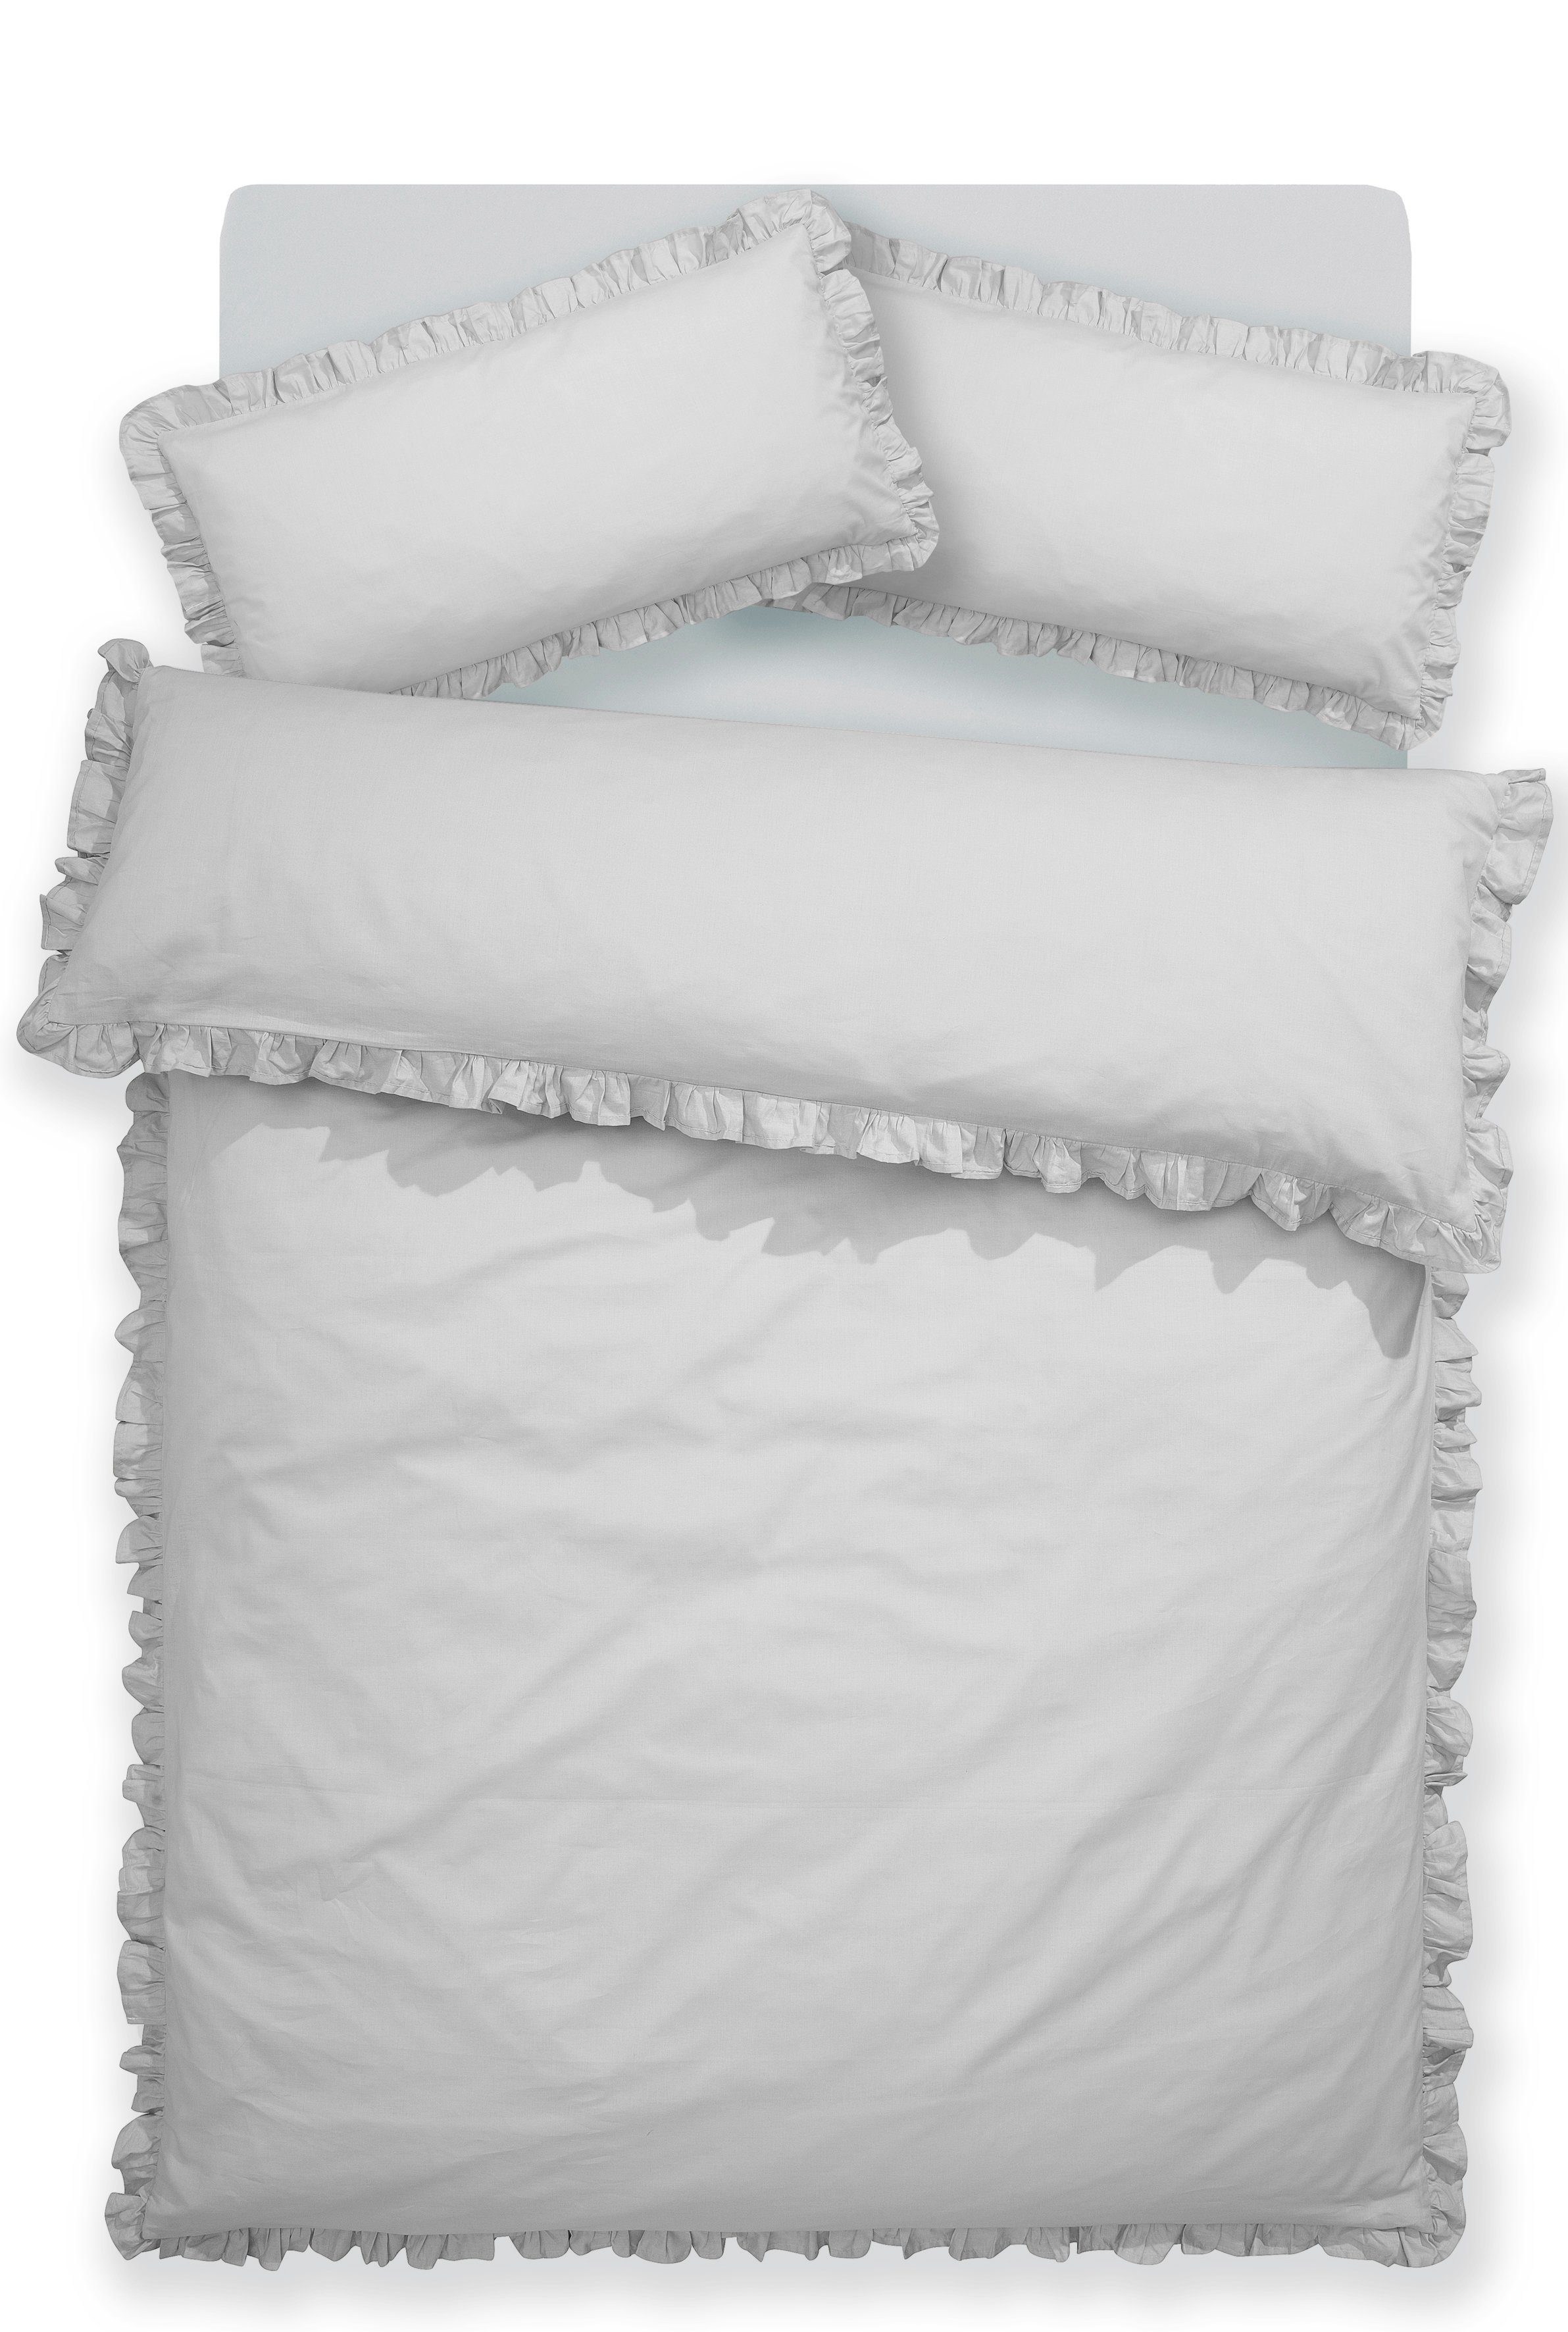 Bettwäsche Violetta in Gr. 135x200 oder 155x220 cm, Home affaire, Renforcé, 2  teilig, Bettwäsche aus Baumwolle, romantische Bettwäsche mit Volants